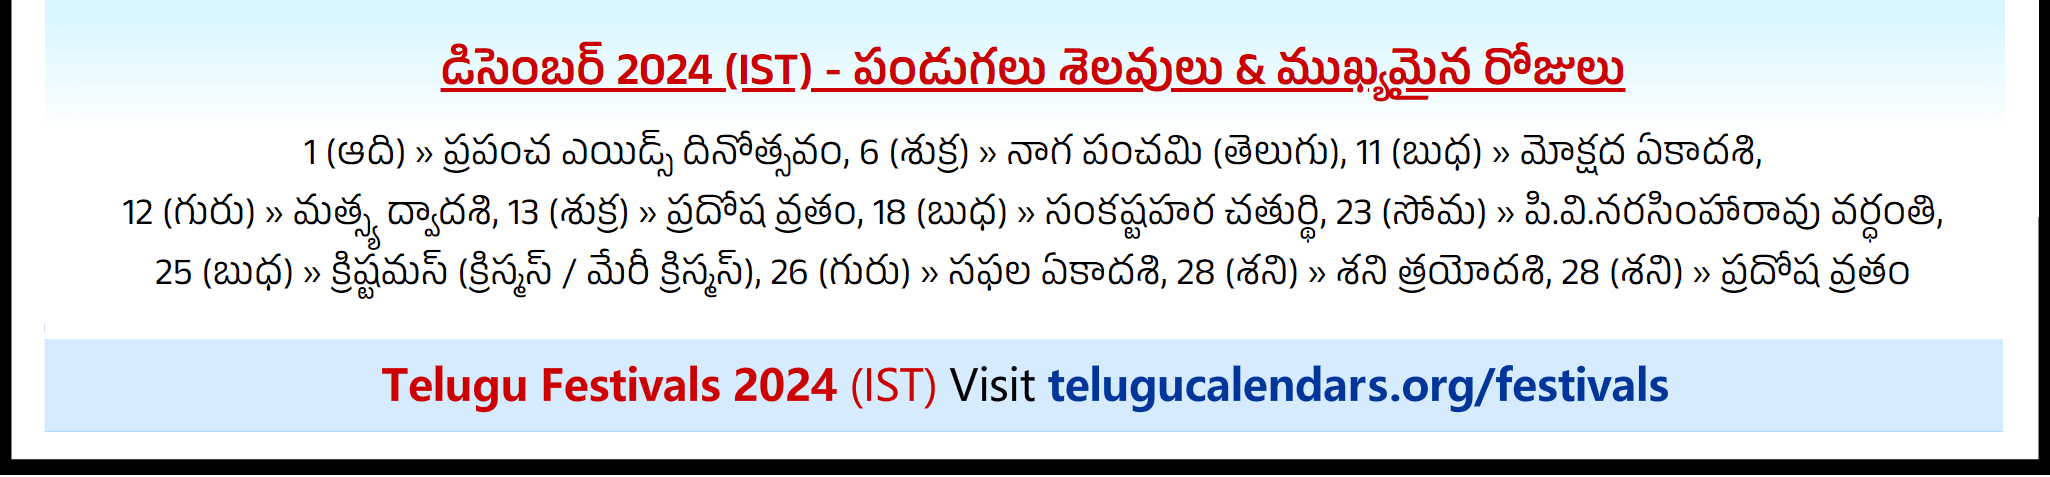 Telugu Festivals 2024 December Singapore